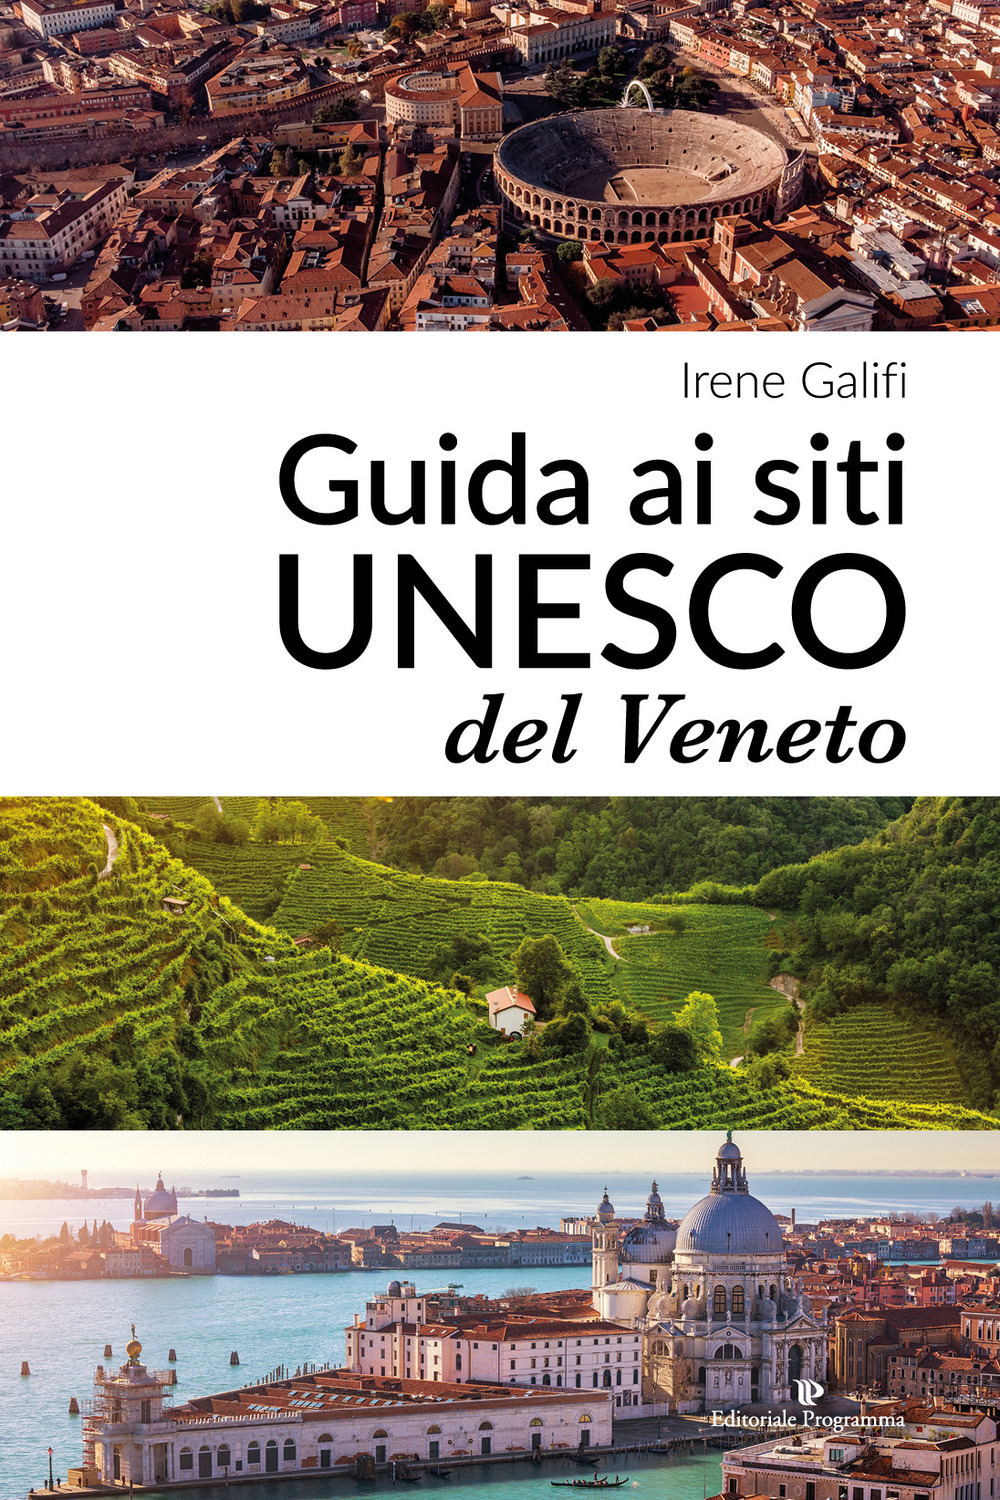 Image of Guida ai siti UNESCO del Veneto